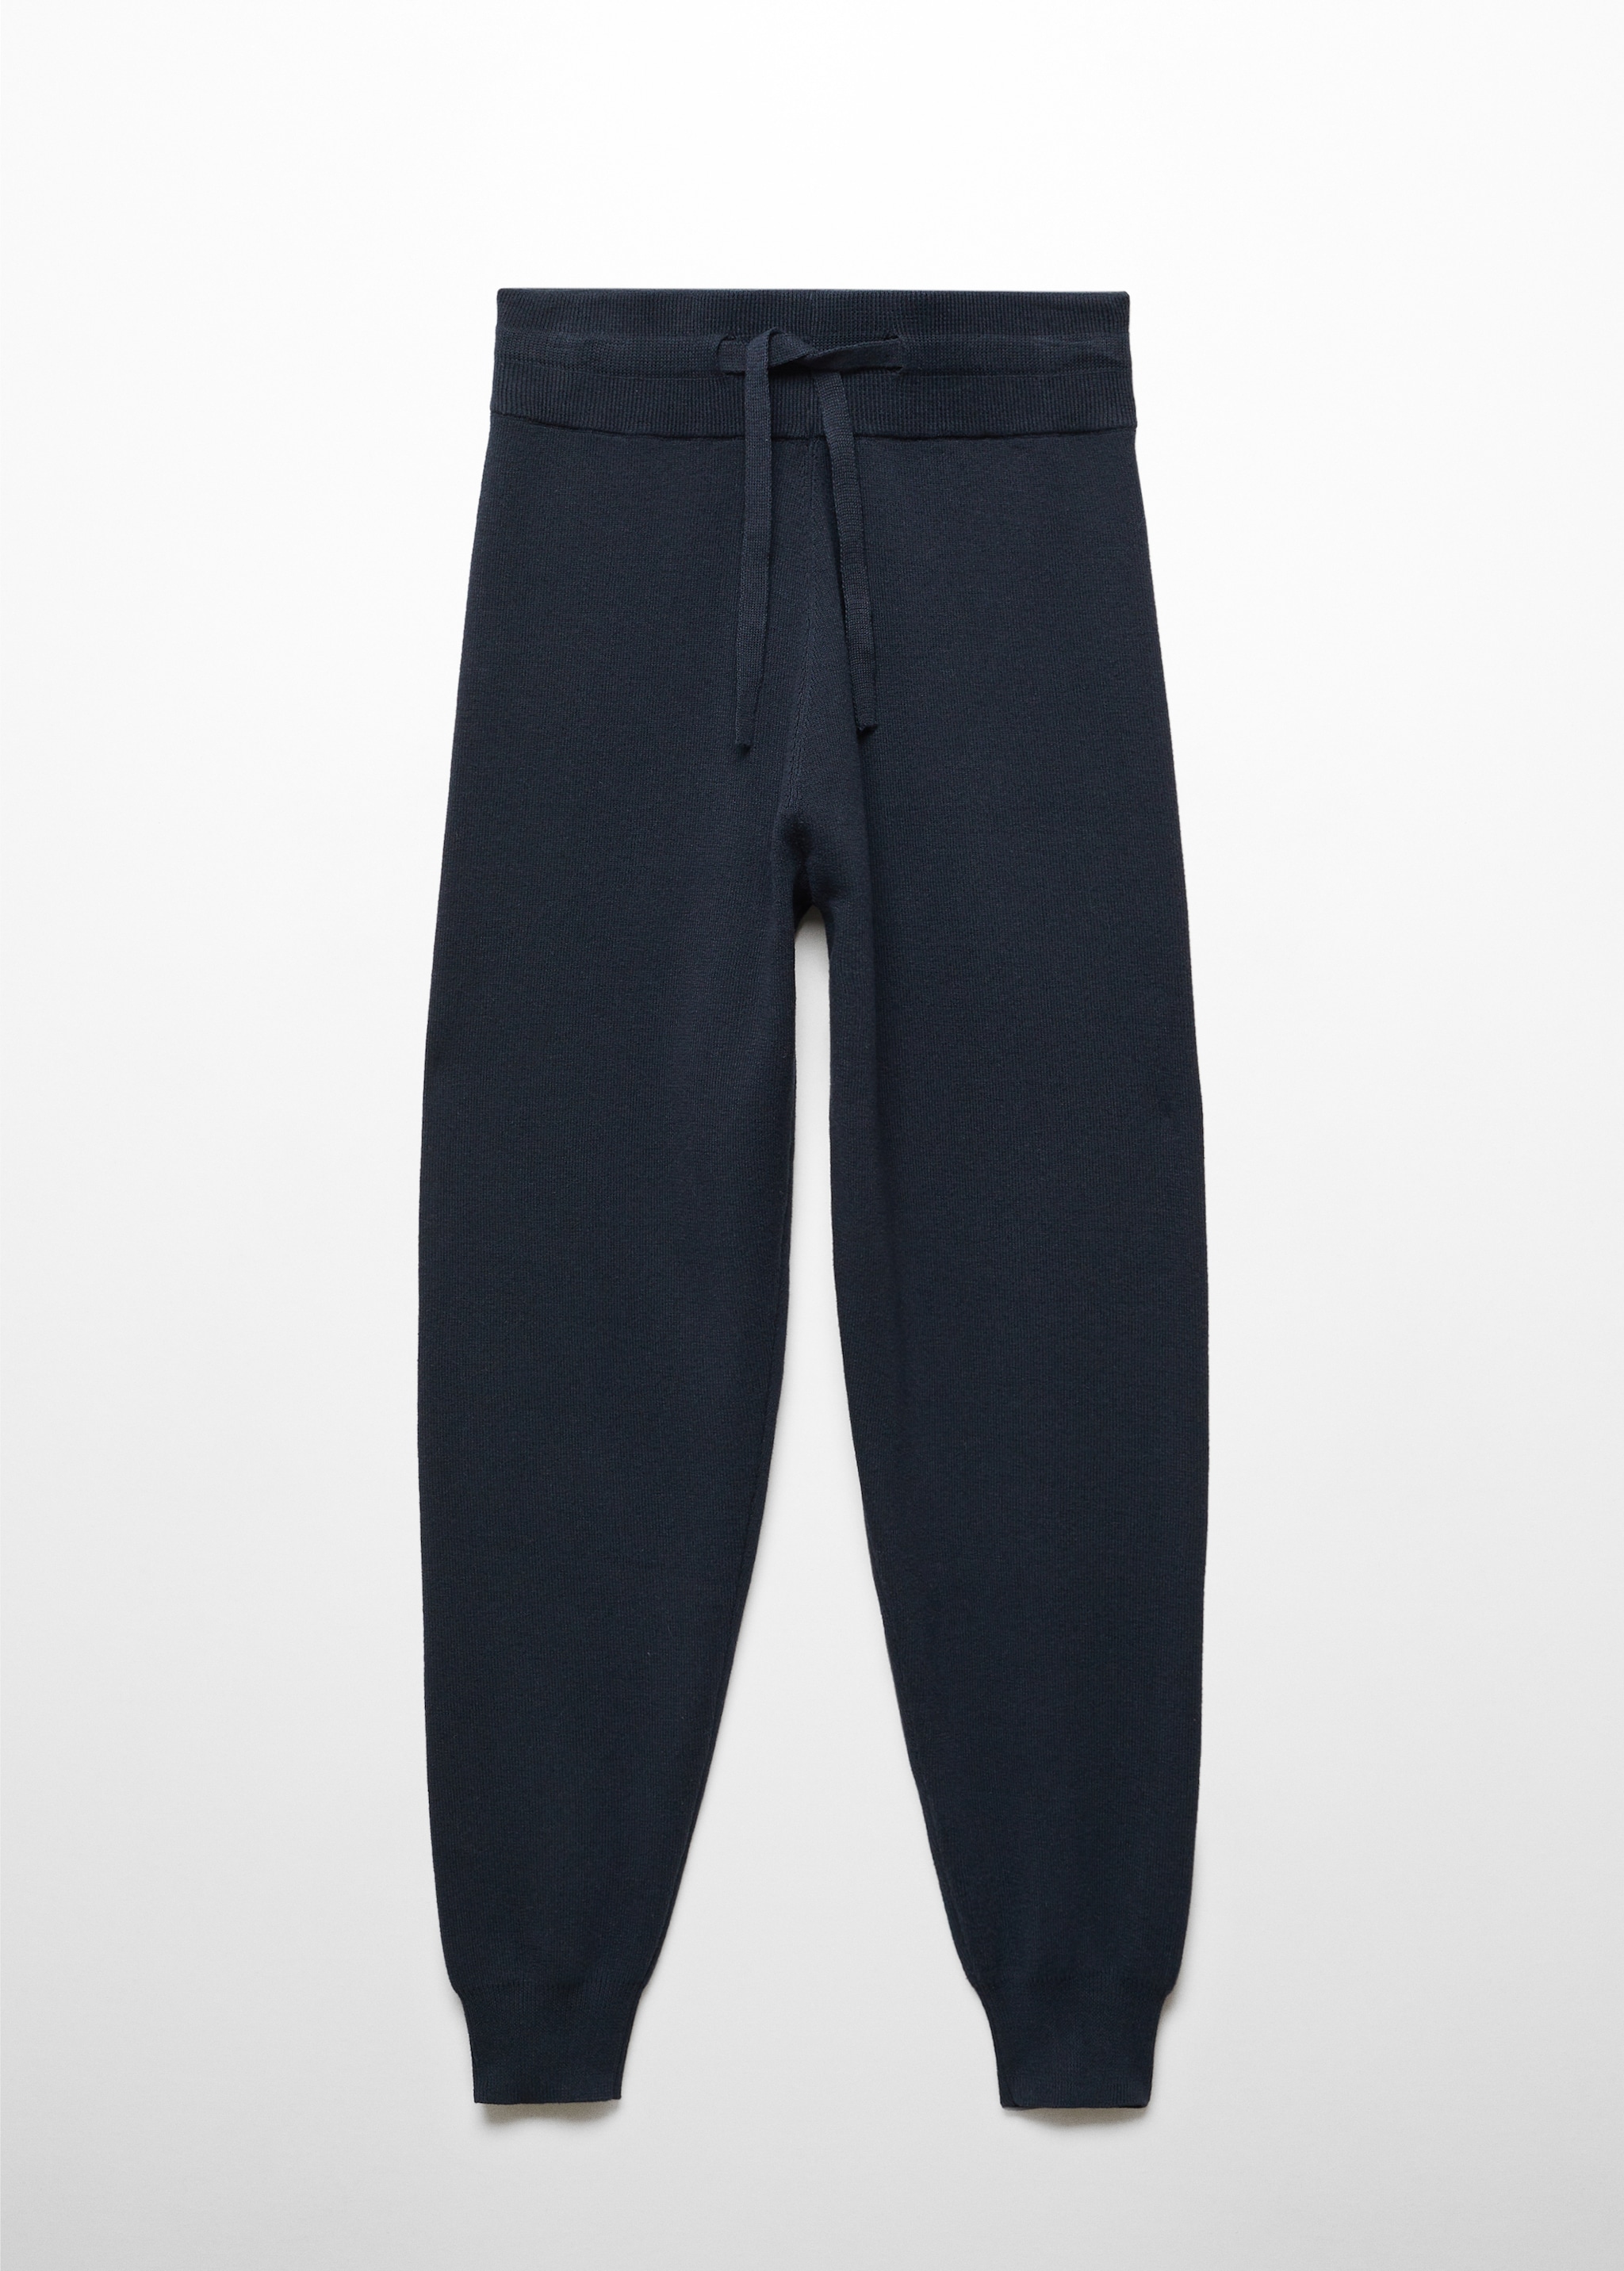 Pantalon pyjama jogging coton et lin - Article sans modèle